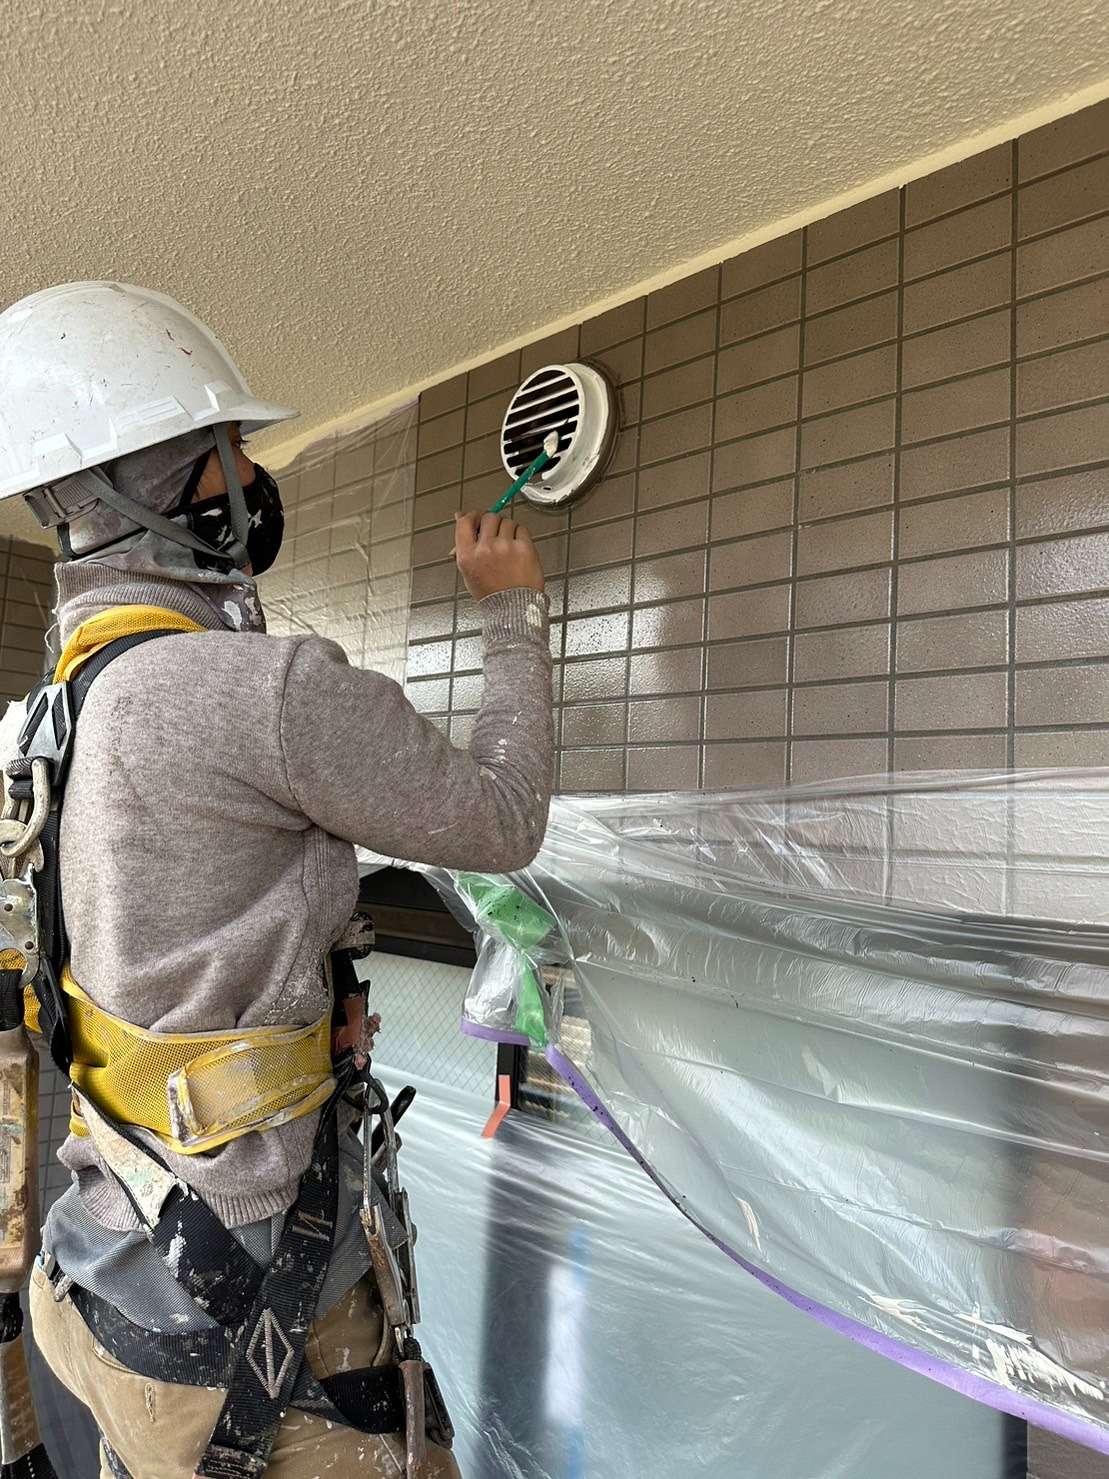 愛知県名古屋市の塗装会社 三誠株式会社で働きませんか？☺施工管理・塗装職人求人募集しています🎶